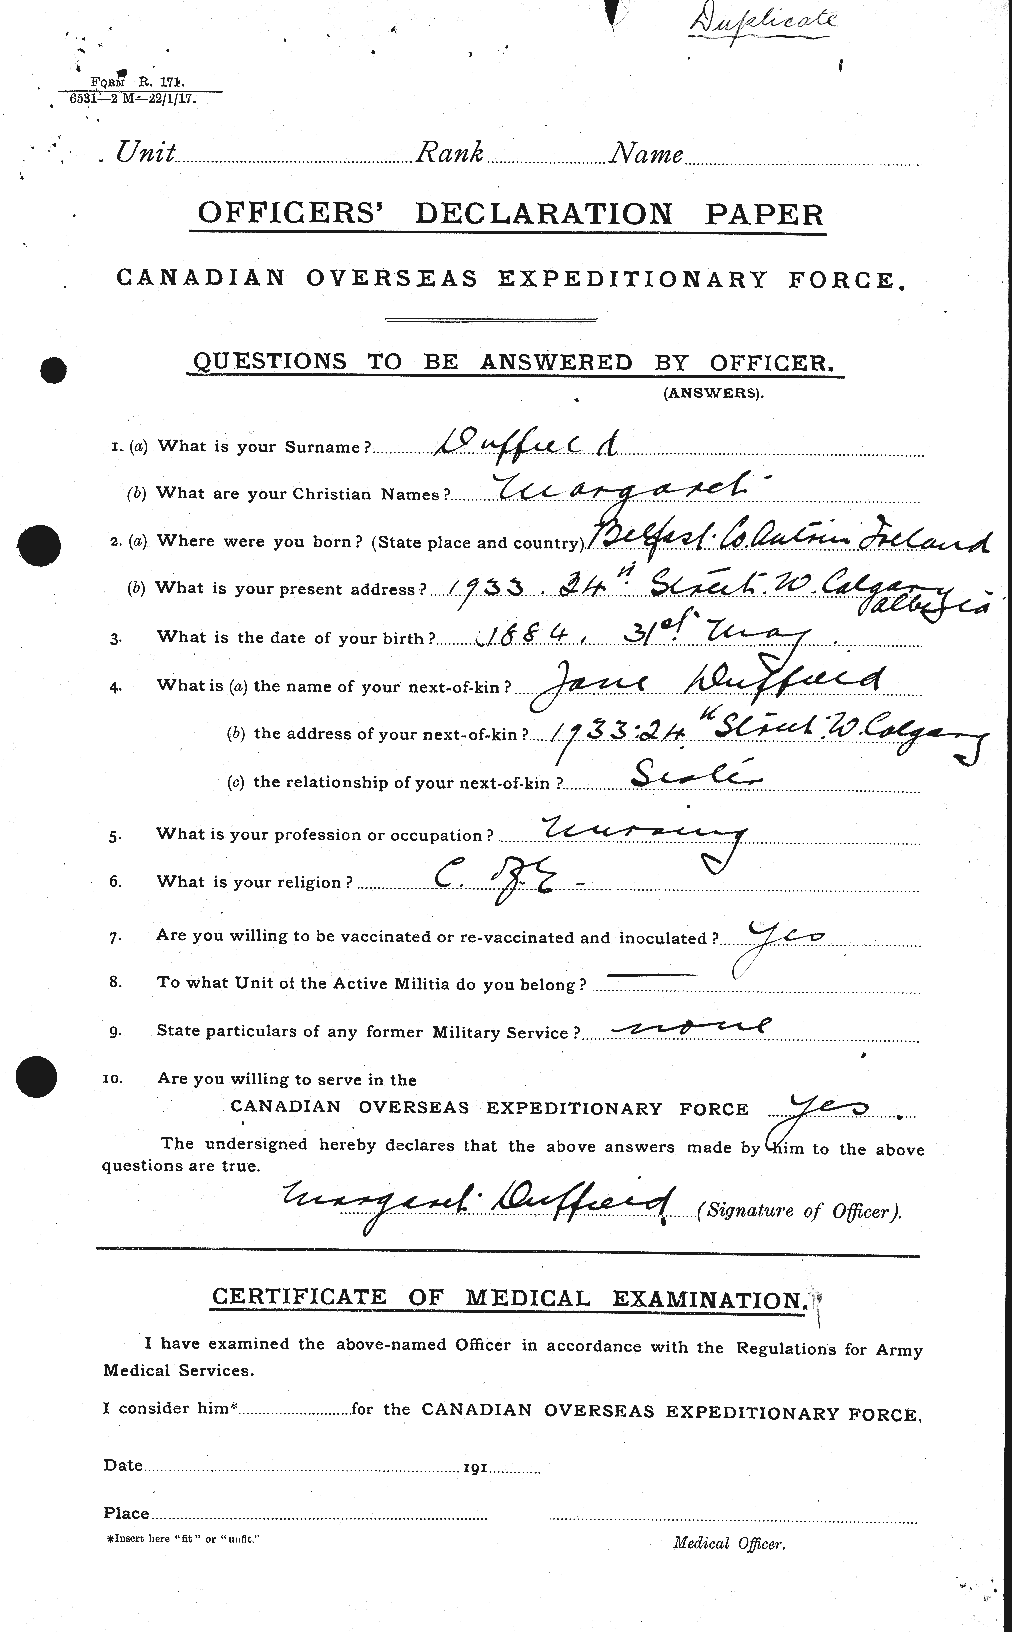 Dossiers du Personnel de la Première Guerre mondiale - CEC 301723a